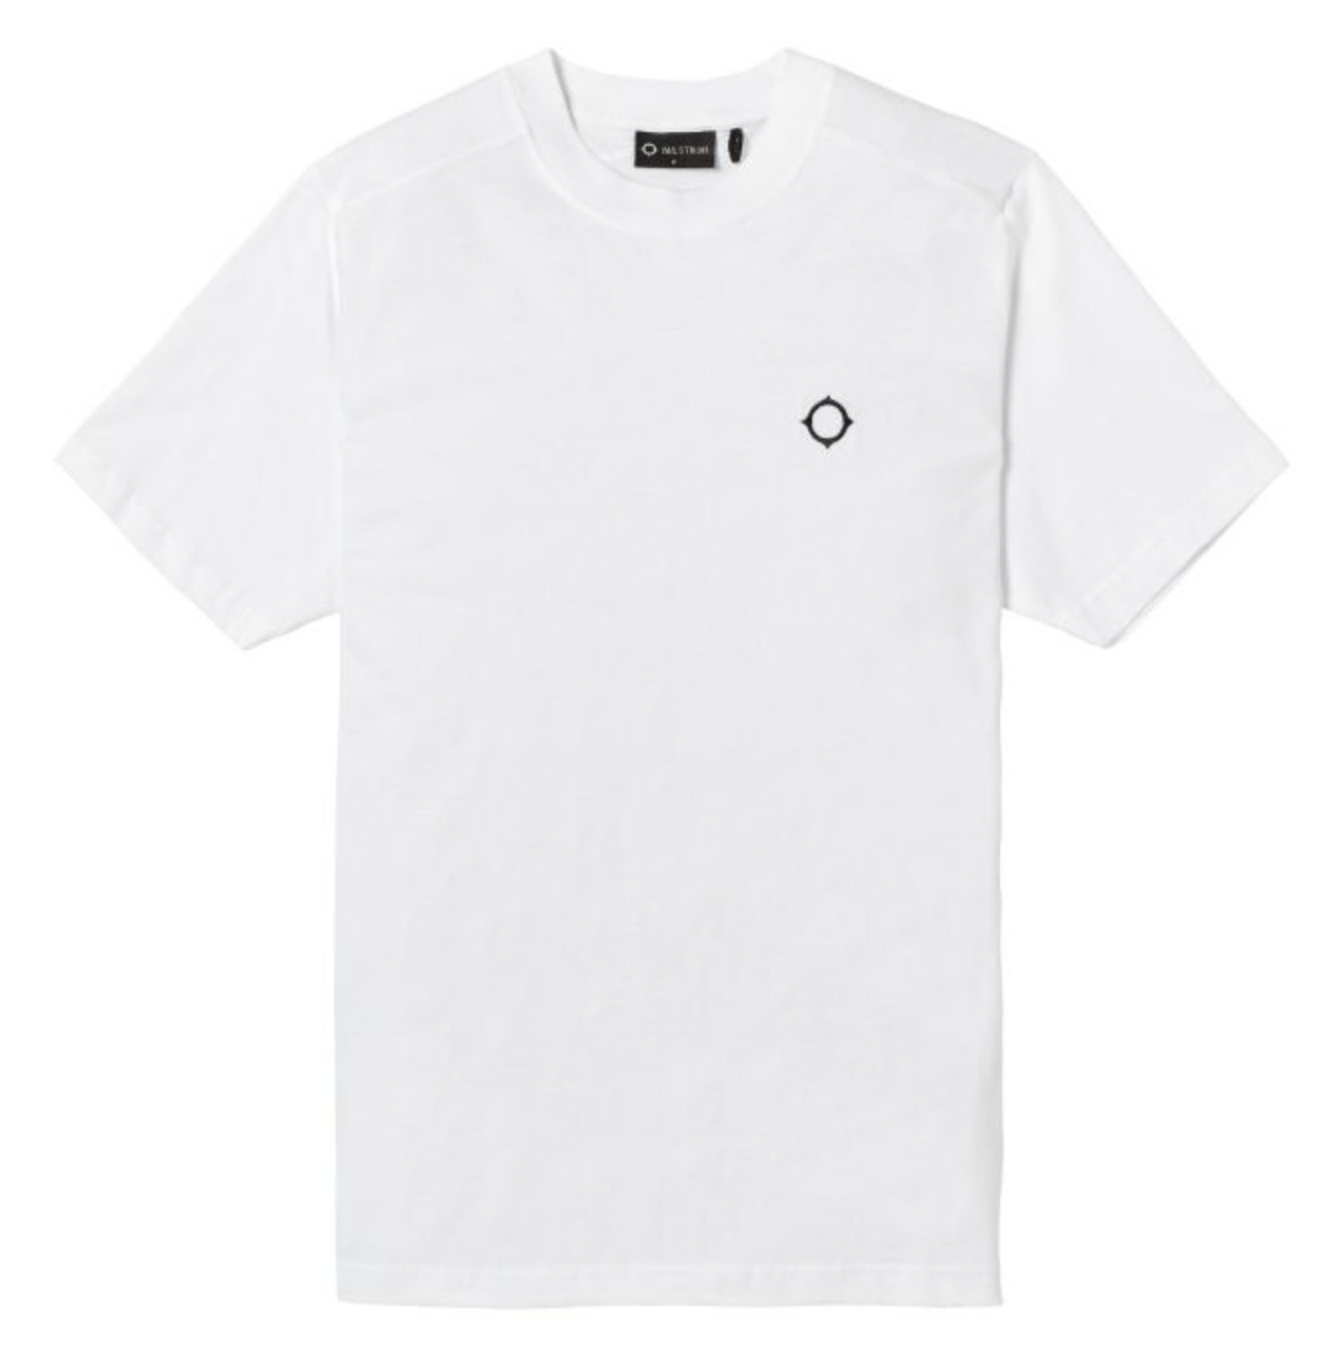 MA. Strum "Icon"Tee Shirt White